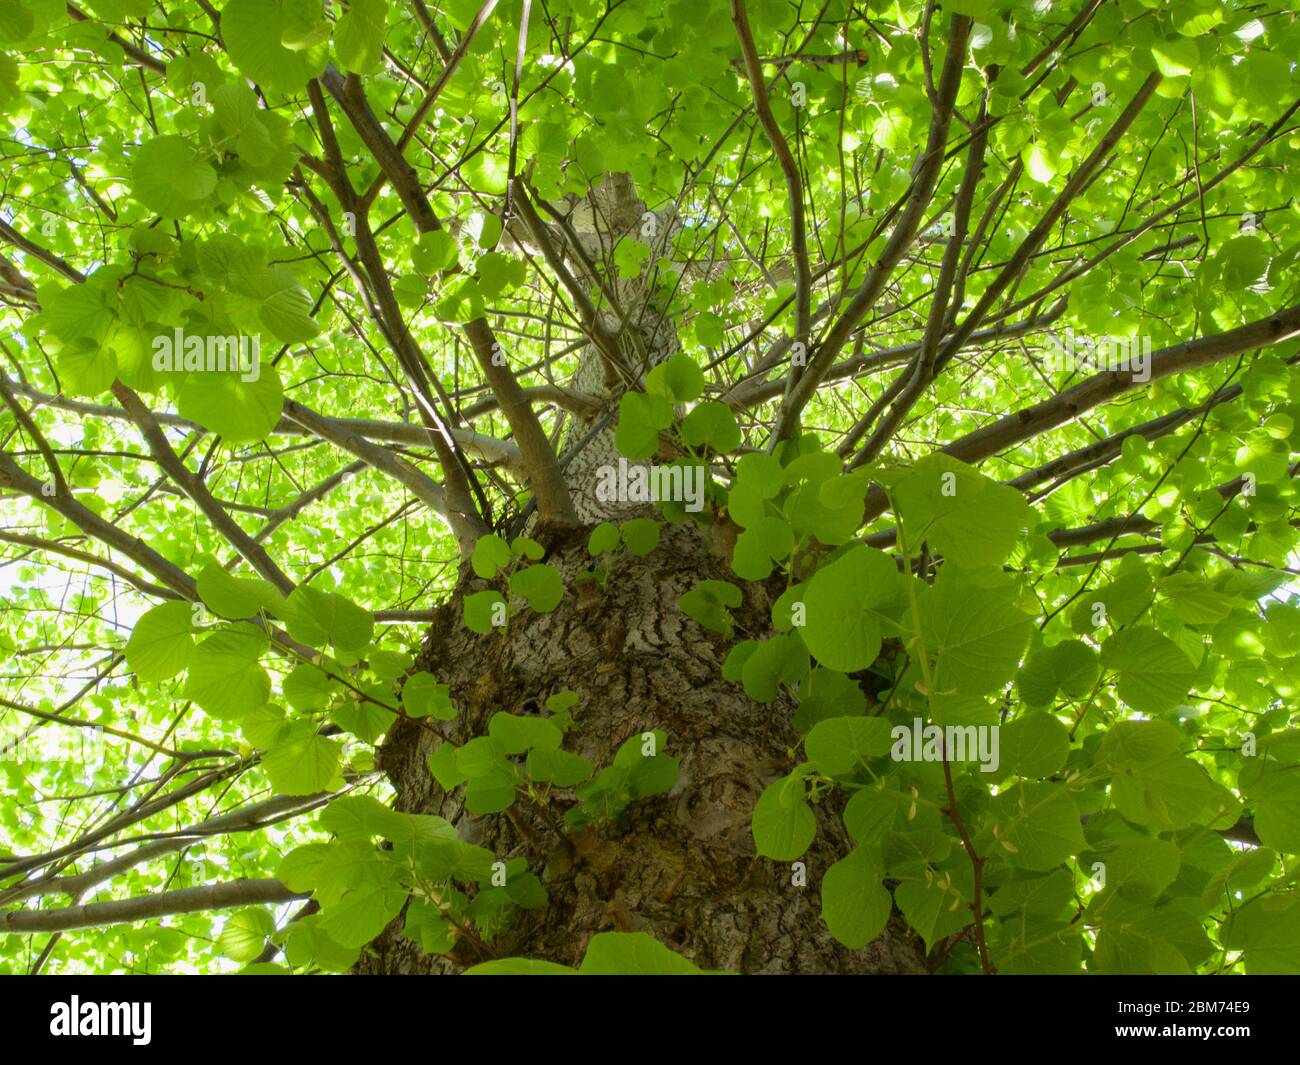 Bella immagine di fogliame che guarda verso l'alto in un albero lussureggiante in primavera Foto Stock